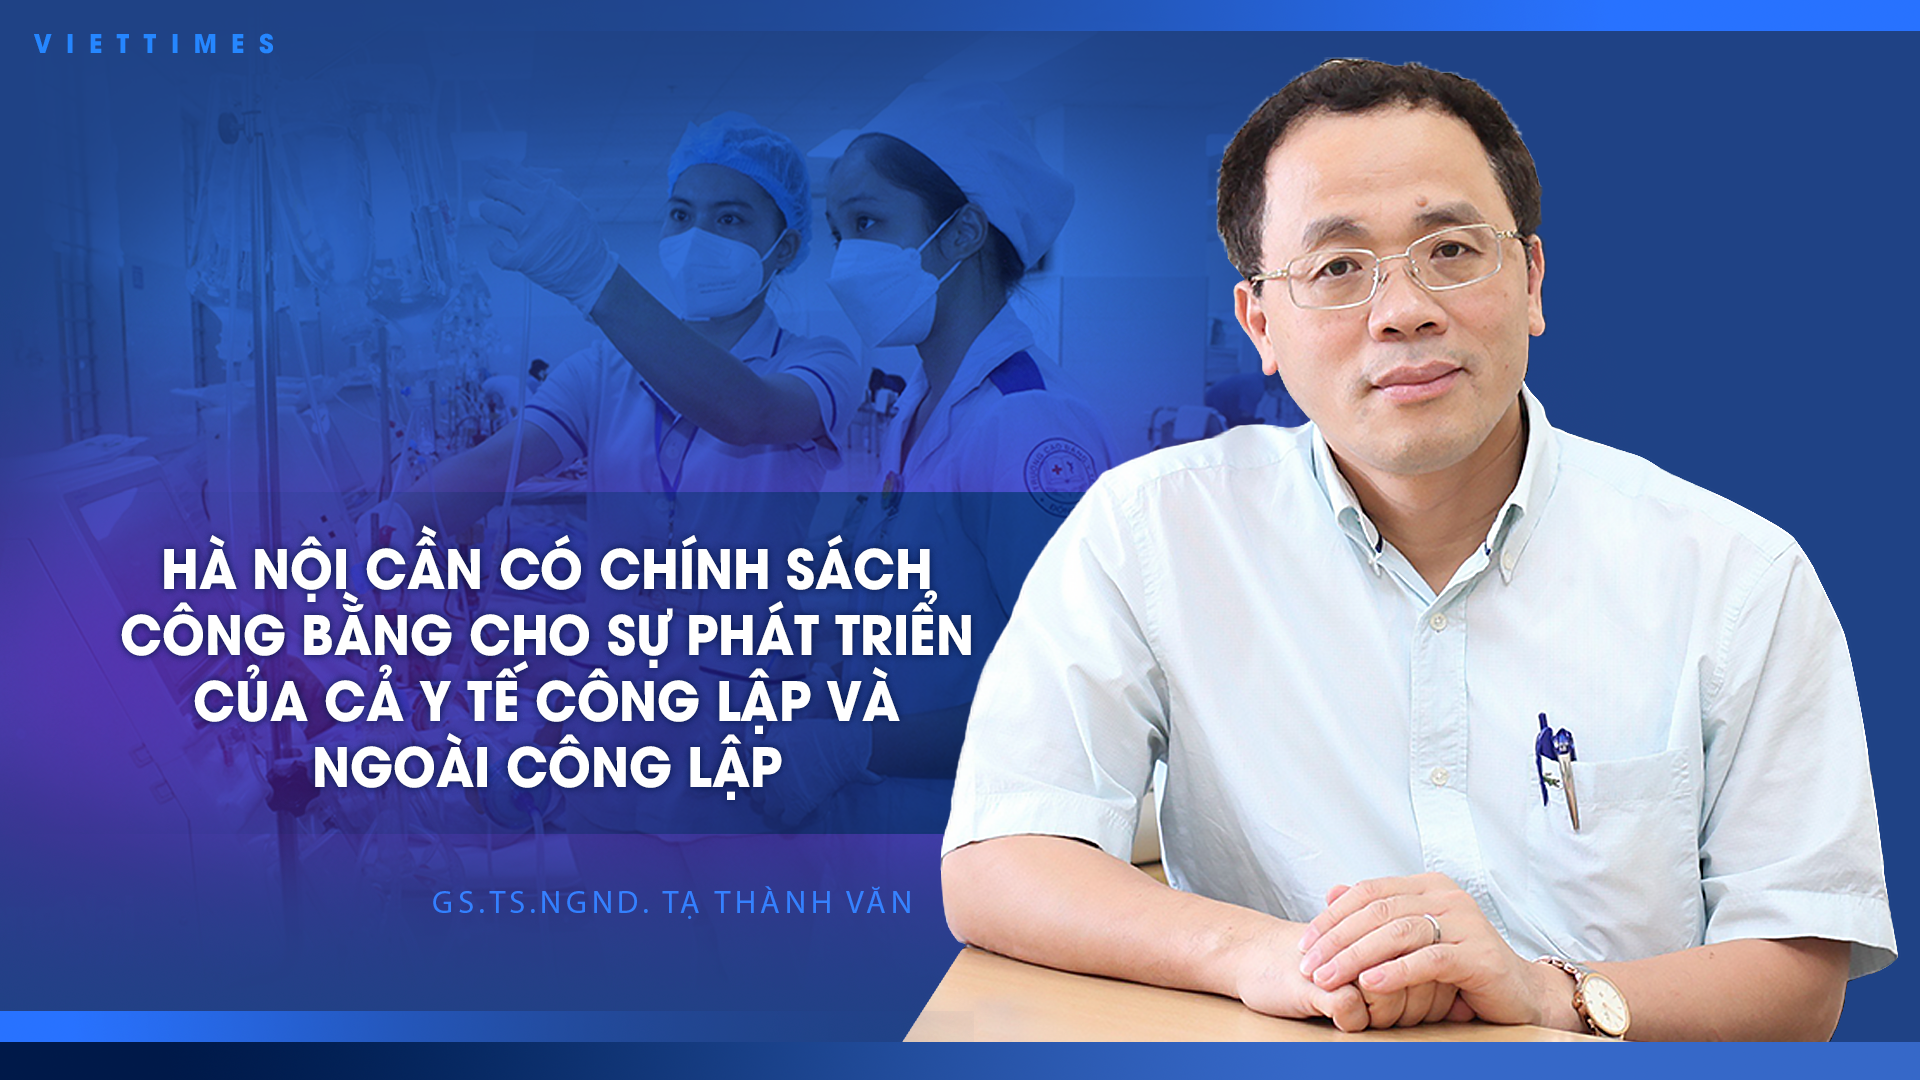 Hà Nội cần có chính sách công bằng cho sự phát triển của cả y tế công lập và ngoài công lập 